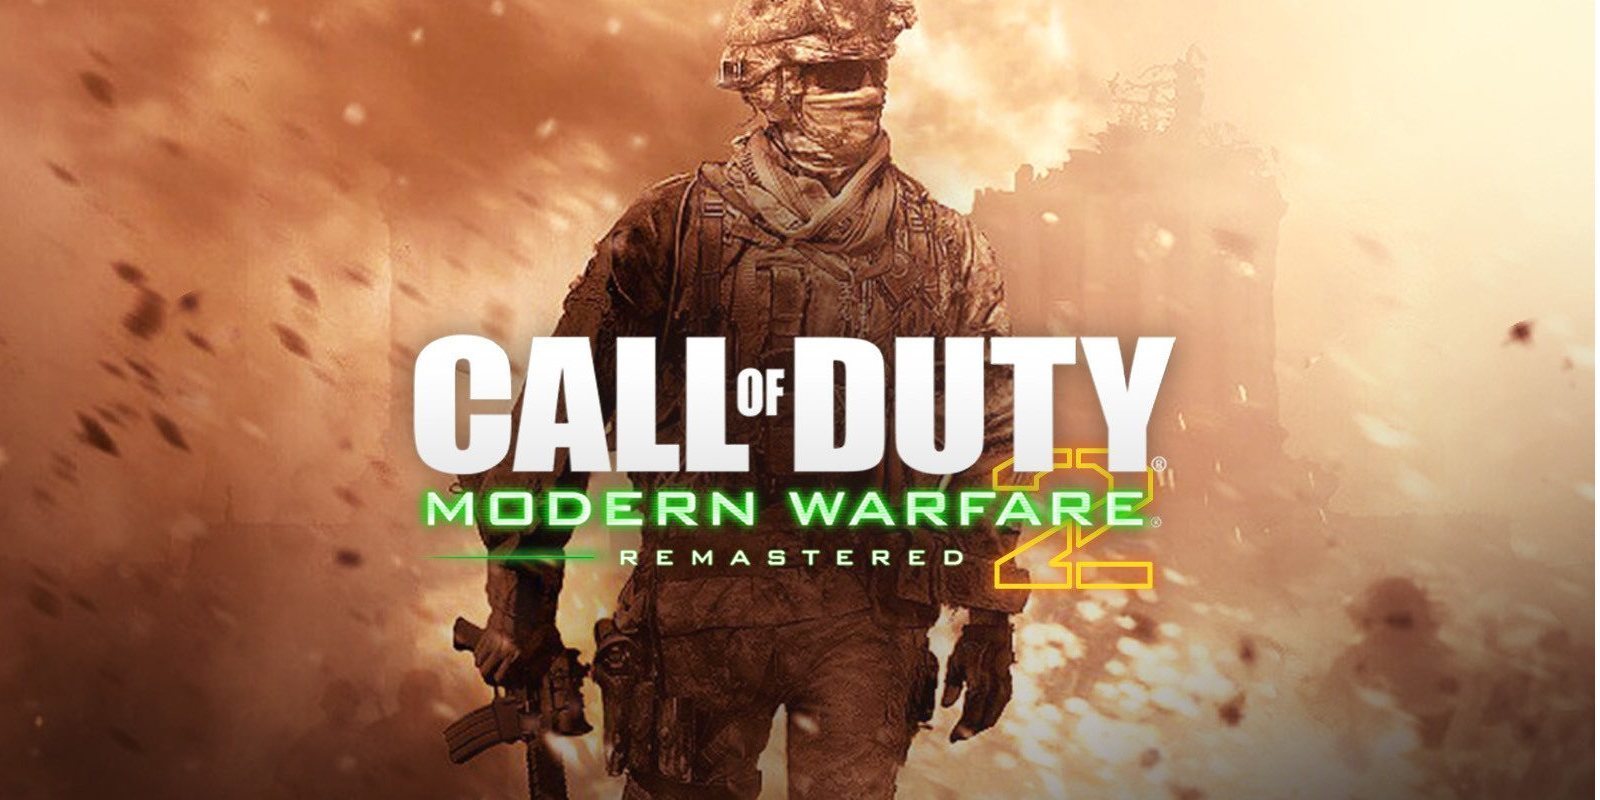 Se filtra campaña remasterizada de 'Call of Duty: Modern Warfare 2', fecha de salida mañana 31 de marzo